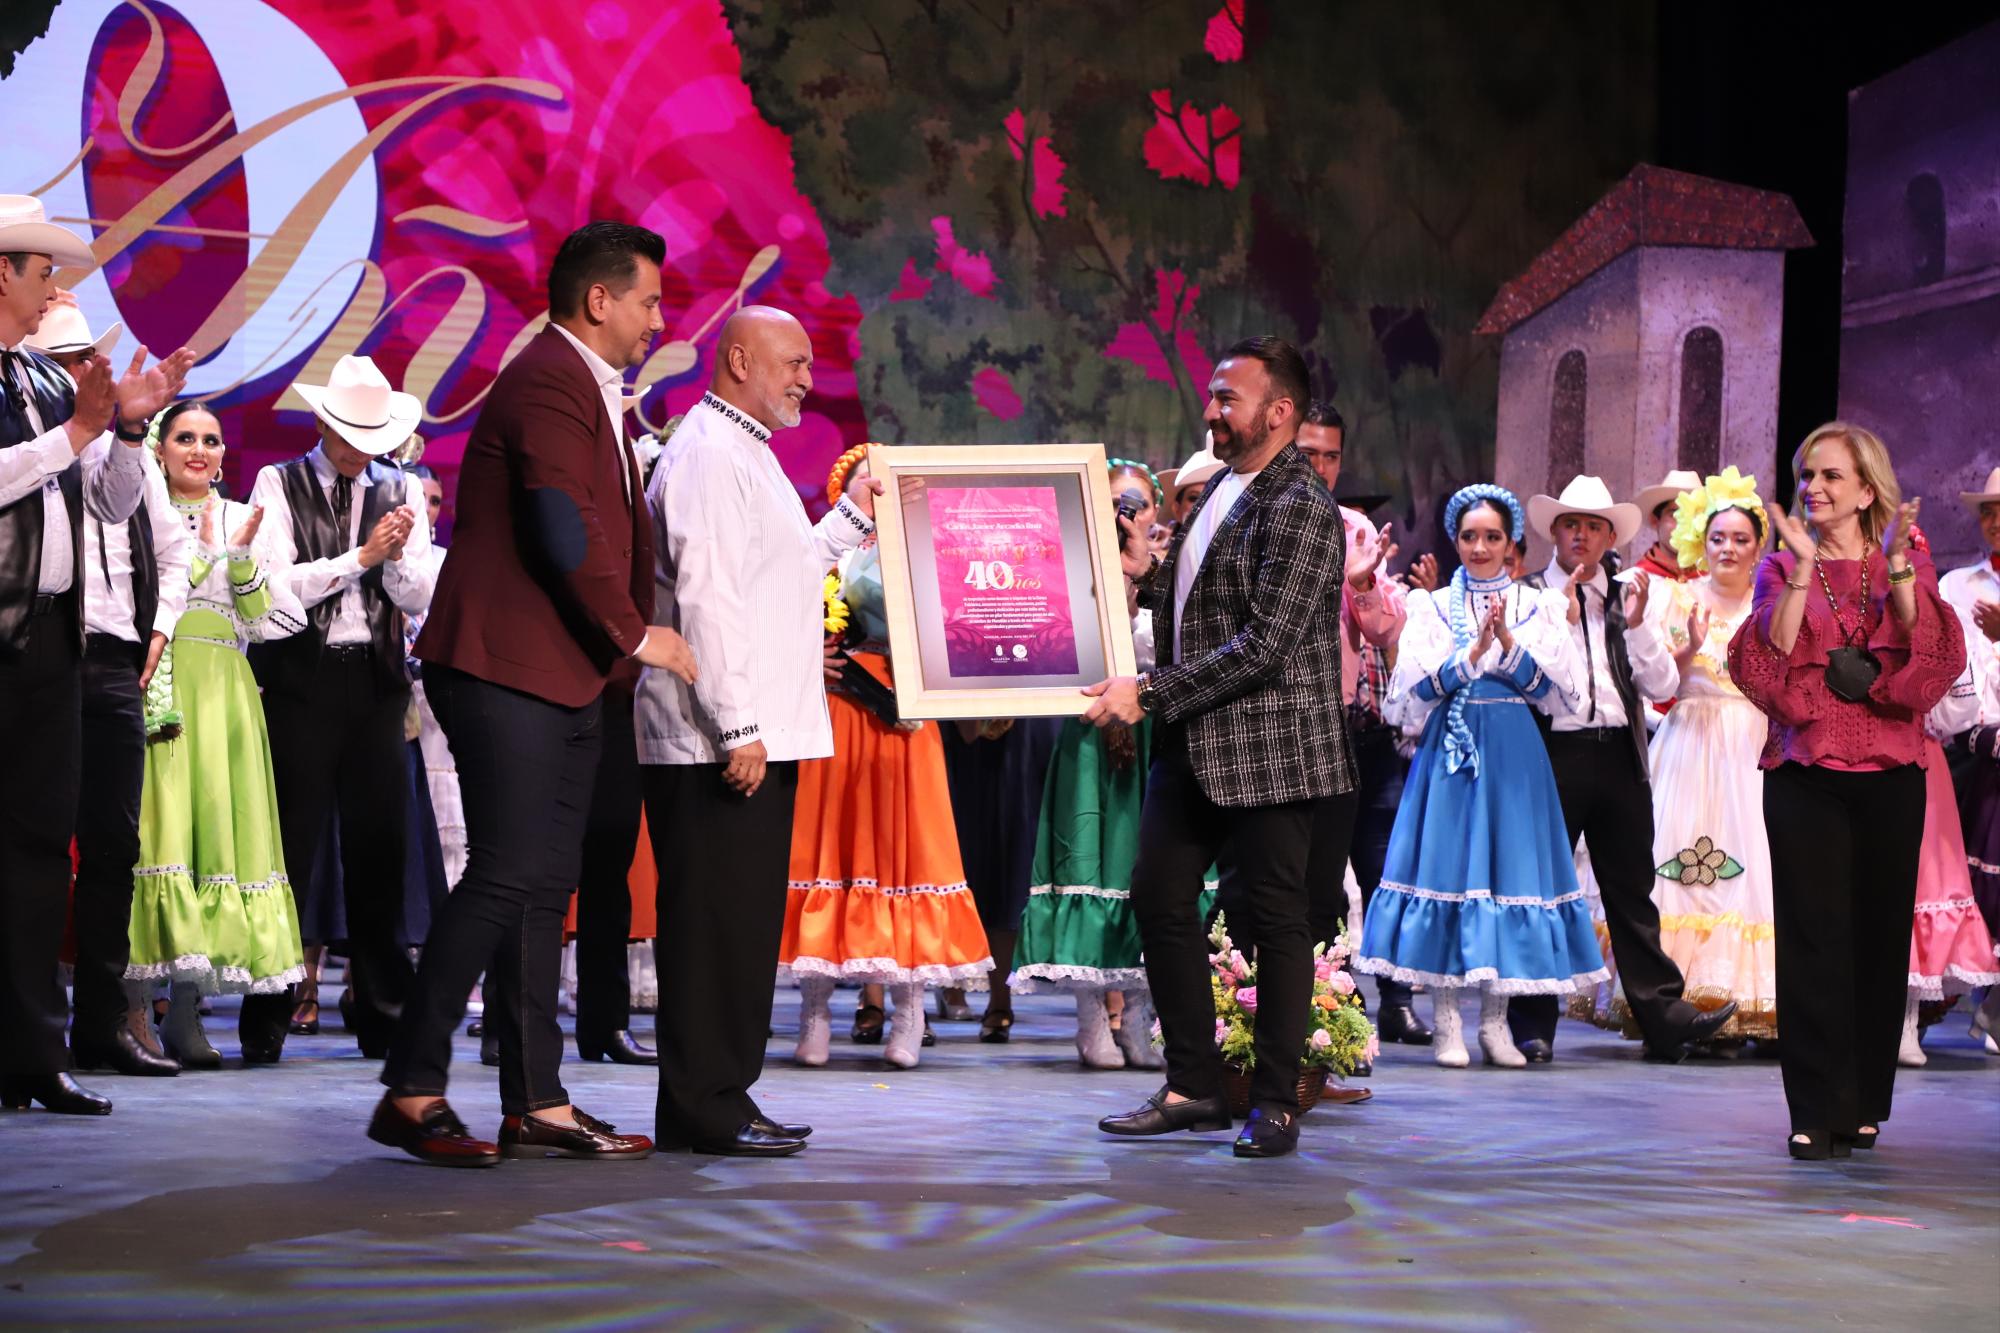 $!El maestro Carlos Javier Arcadia recibe el reconocimiento por parte del Instituto de Cultura, Turismo y Arte de Mazatlán por sus 40 años de trayectoria.